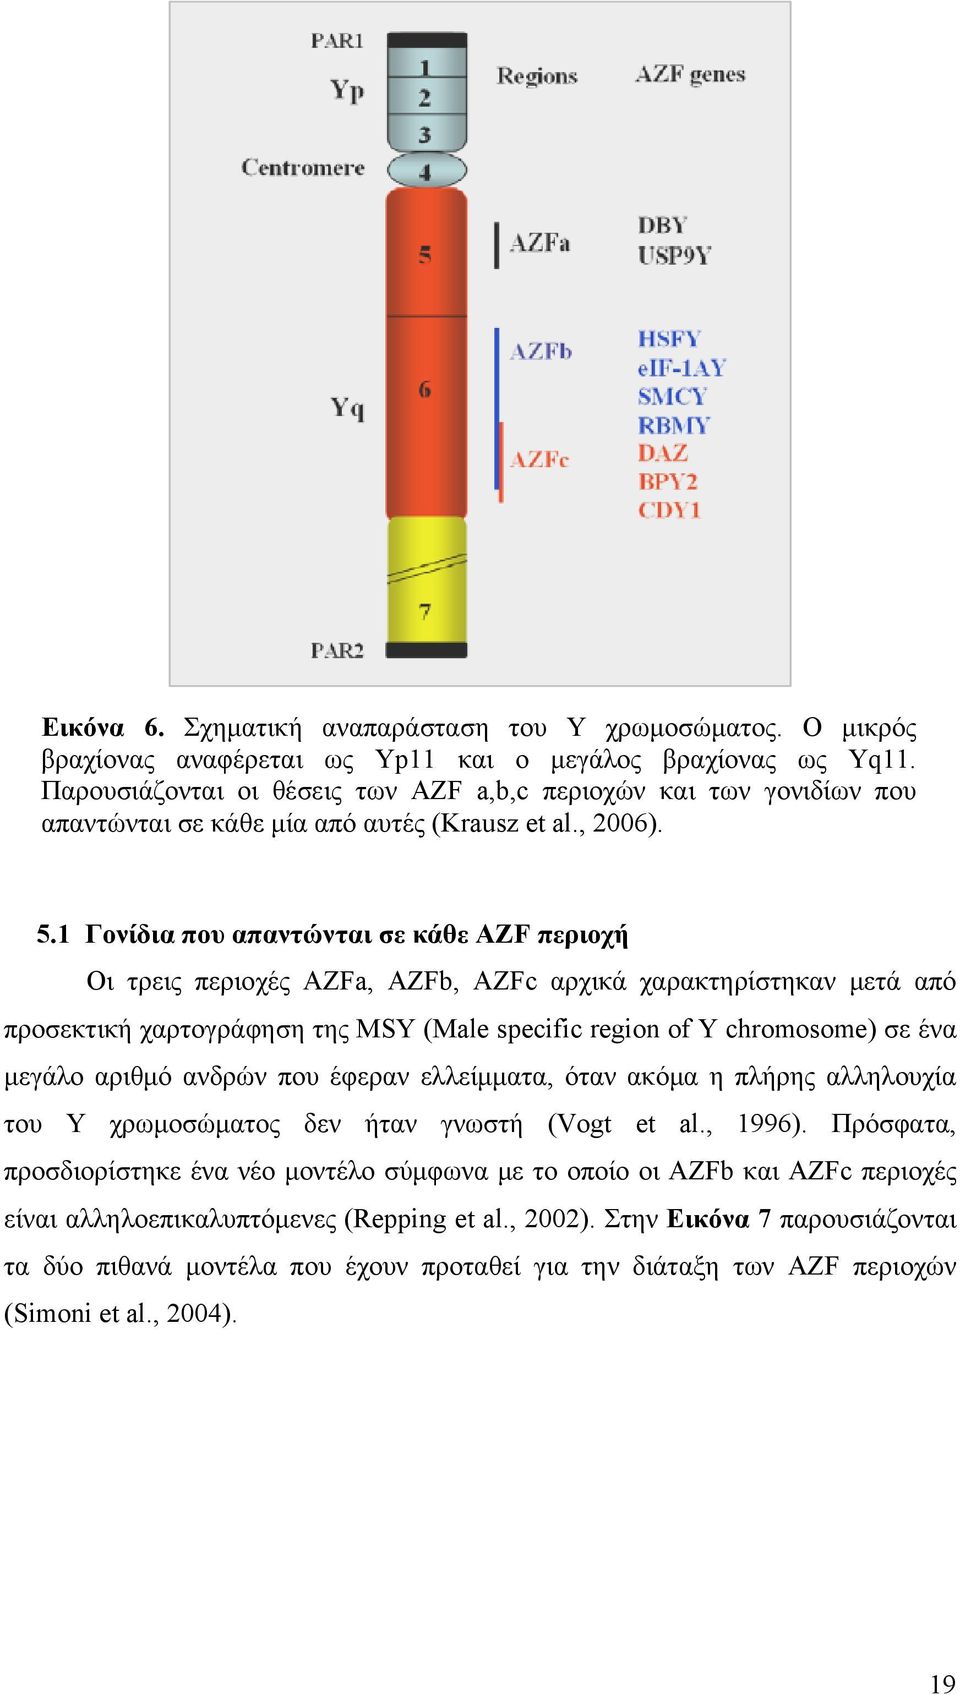 1 Γονίδια που απαντώνται σε κάθε AZF περιοχή Οι τρεις περιοχές AZFa, AZFb, AZFc αρχικά χαρακτηρίστηκαν μετά από προσεκτική χαρτογράφηση της MSY (Male specific region of Y chromosome) σε ένα μεγάλο